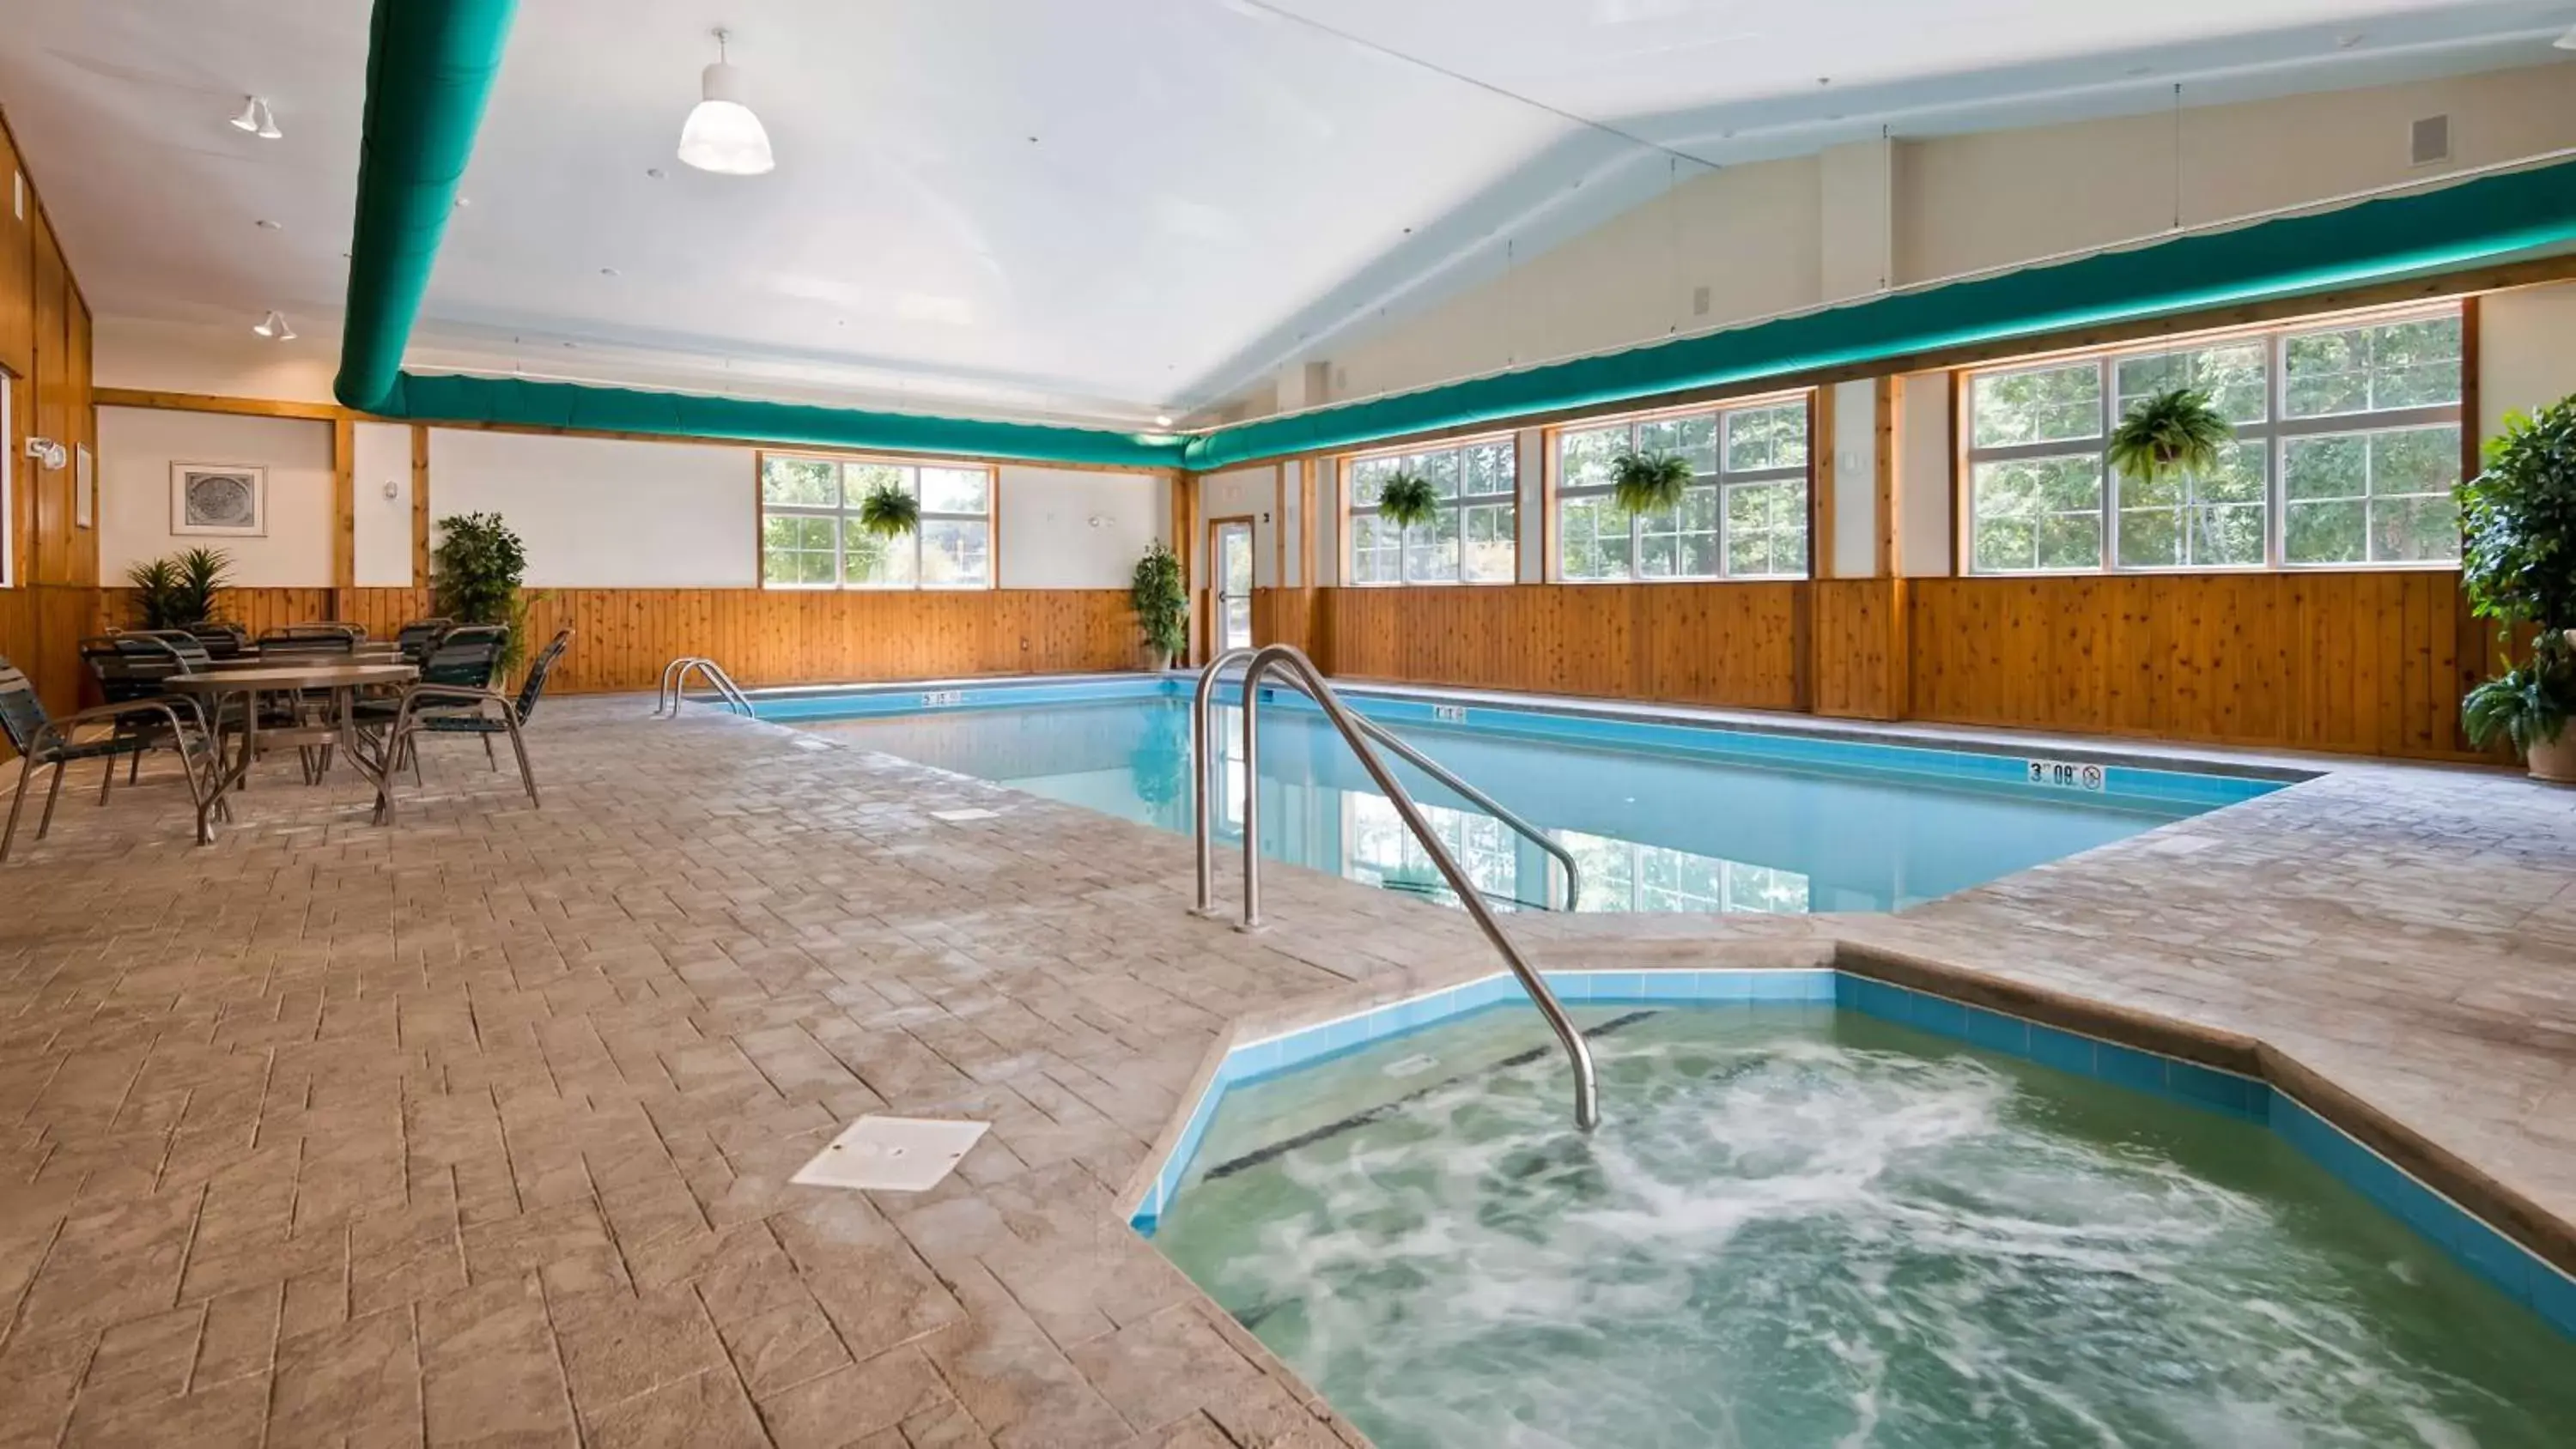 On site, Swimming Pool in Best Western Plus Crossroads Inn & Suites